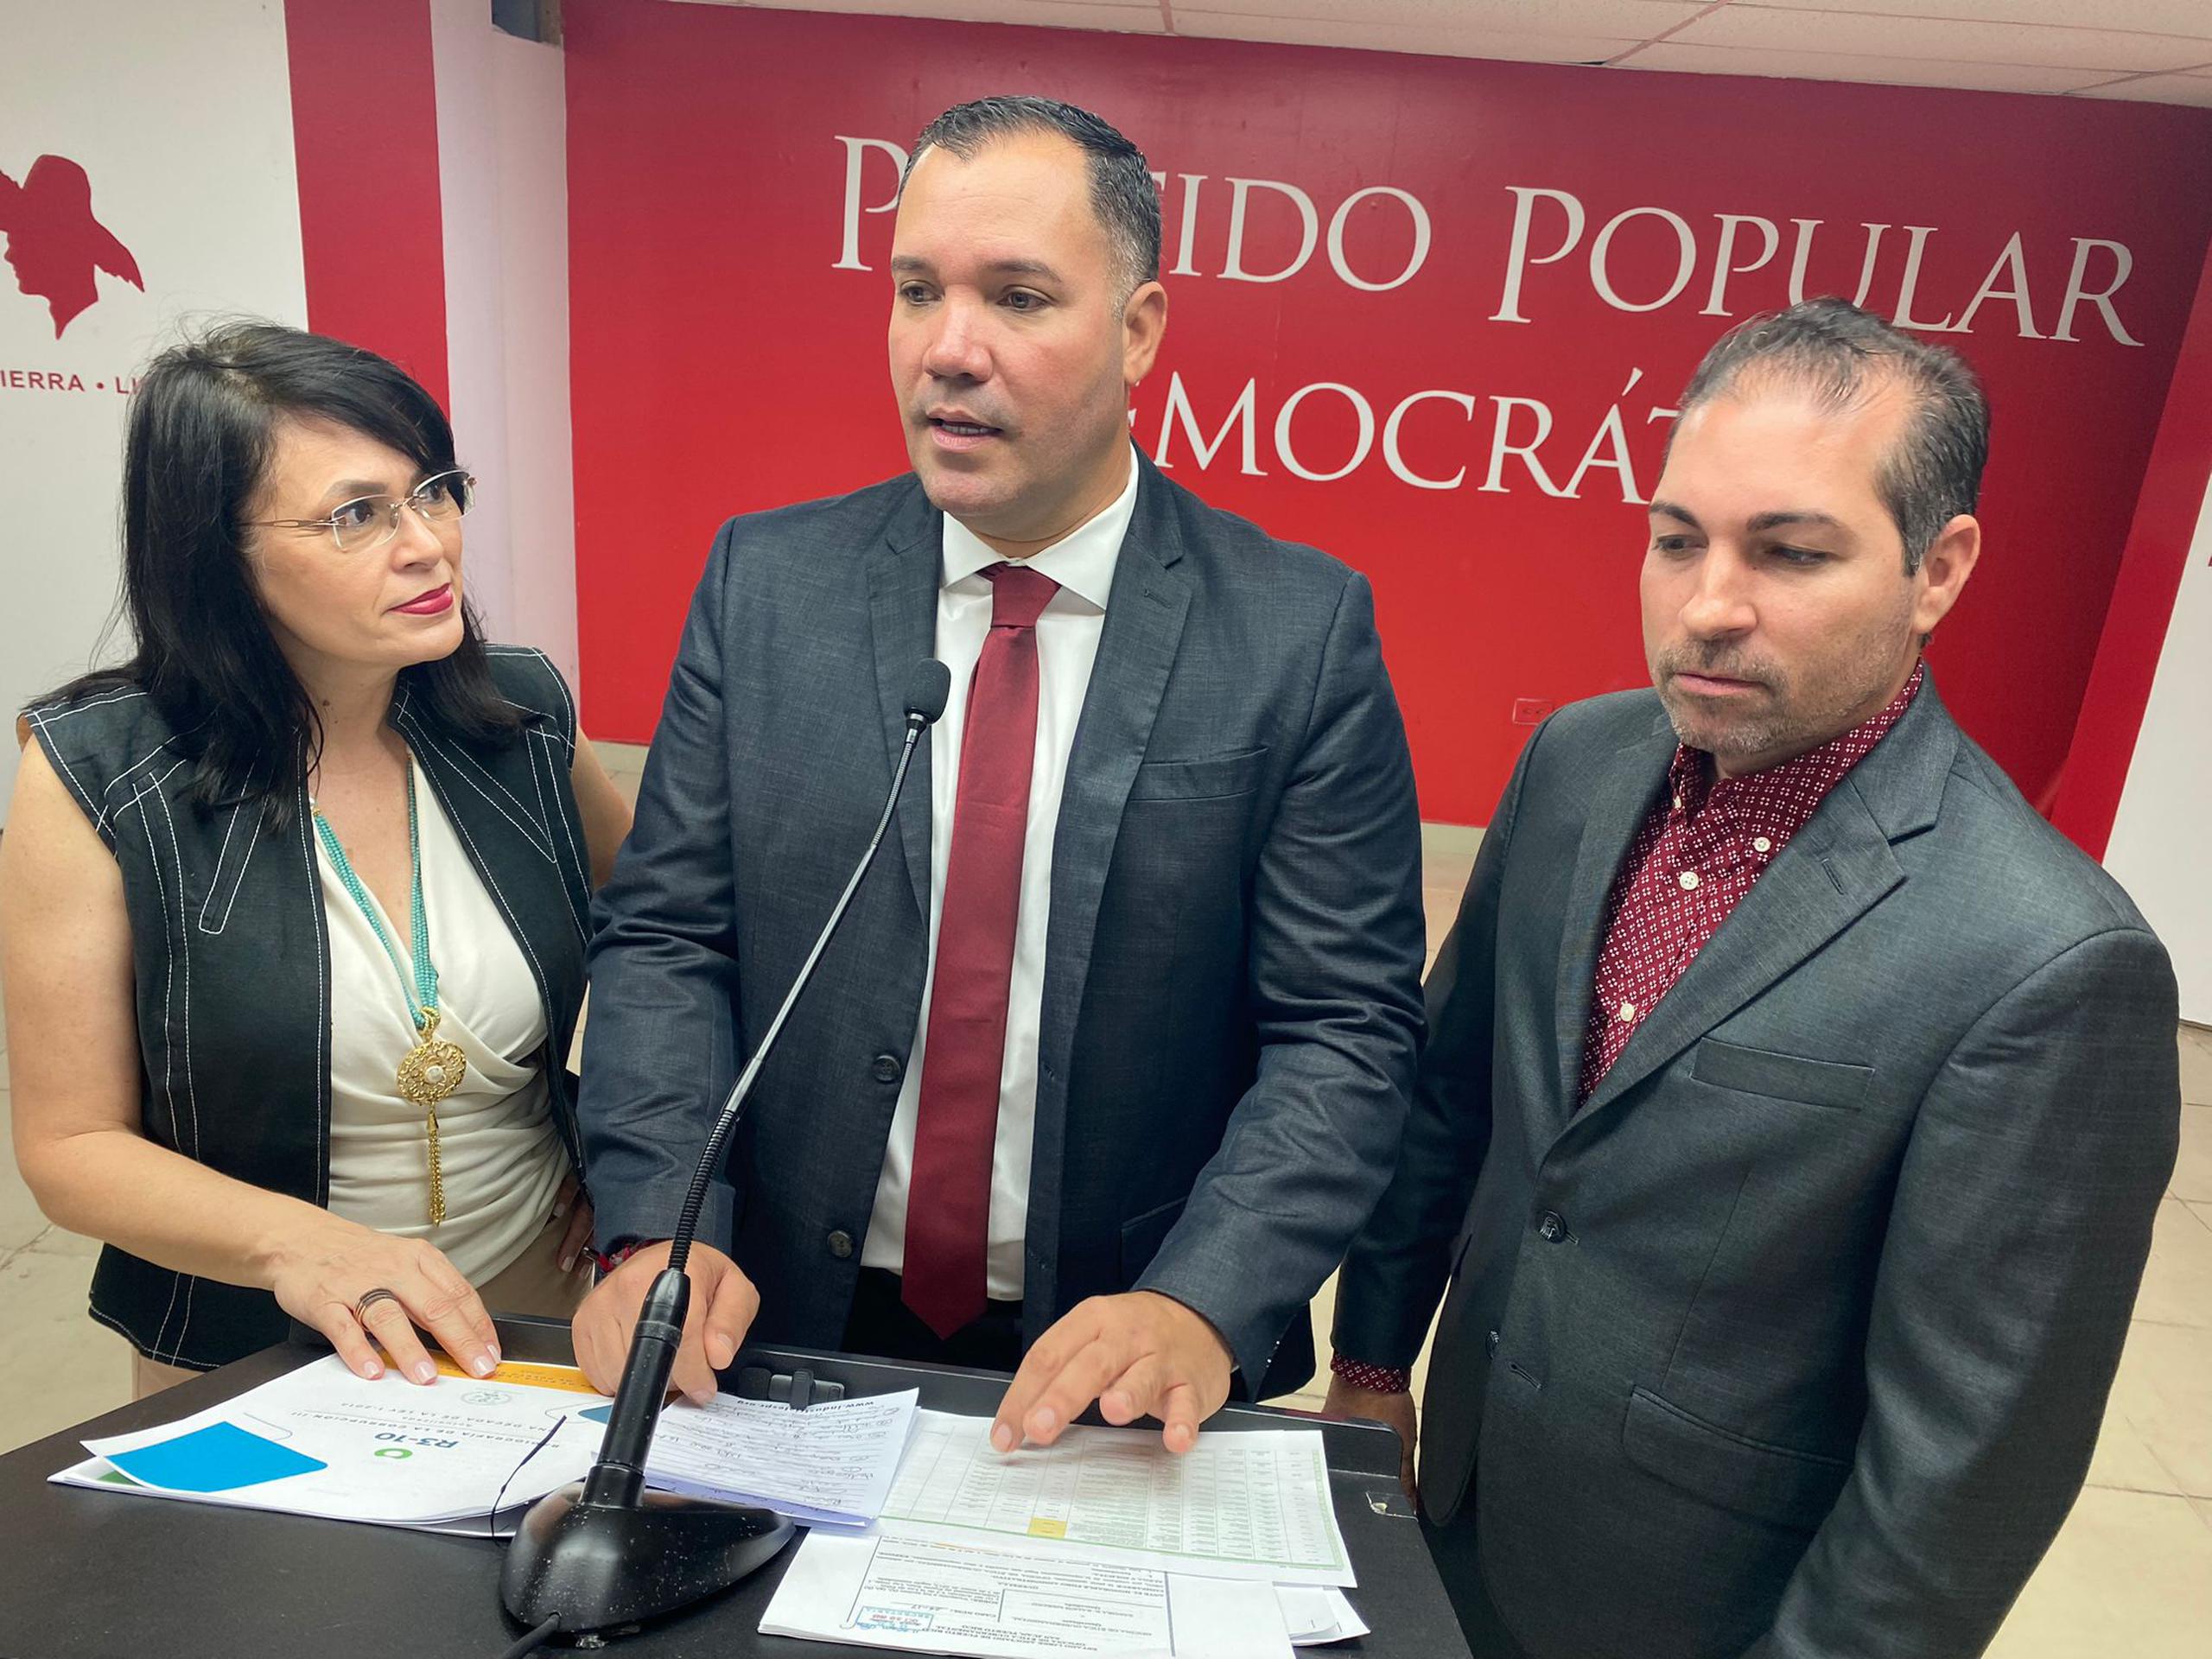 Ernesto Cabrera hizo las denuncias durante una conferencia de prensa efectuada en la sede del PPD, donde llegó flanqueado por los candidatos al Senado por el distrito 1 de San Juan (que incluye a Guaynabo), Ivonne Lozada y Gabriel Pérez.